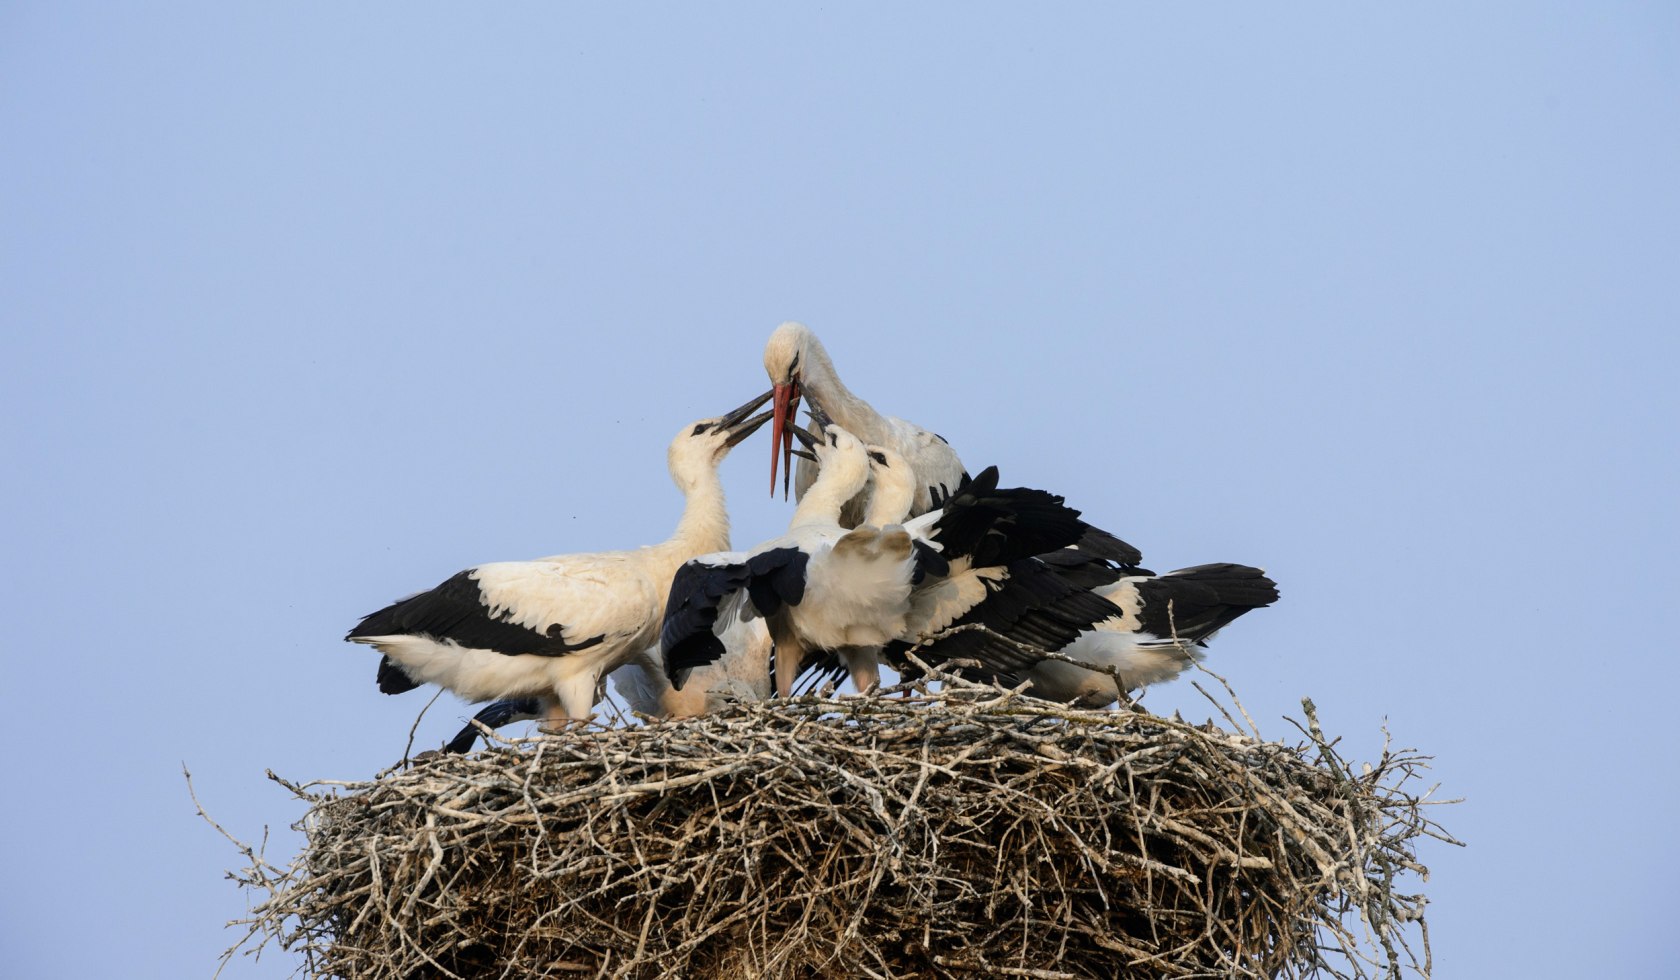 White storks in the nest, © TourismusMarketing Niedersachsen GmbH / Dieter Damschen